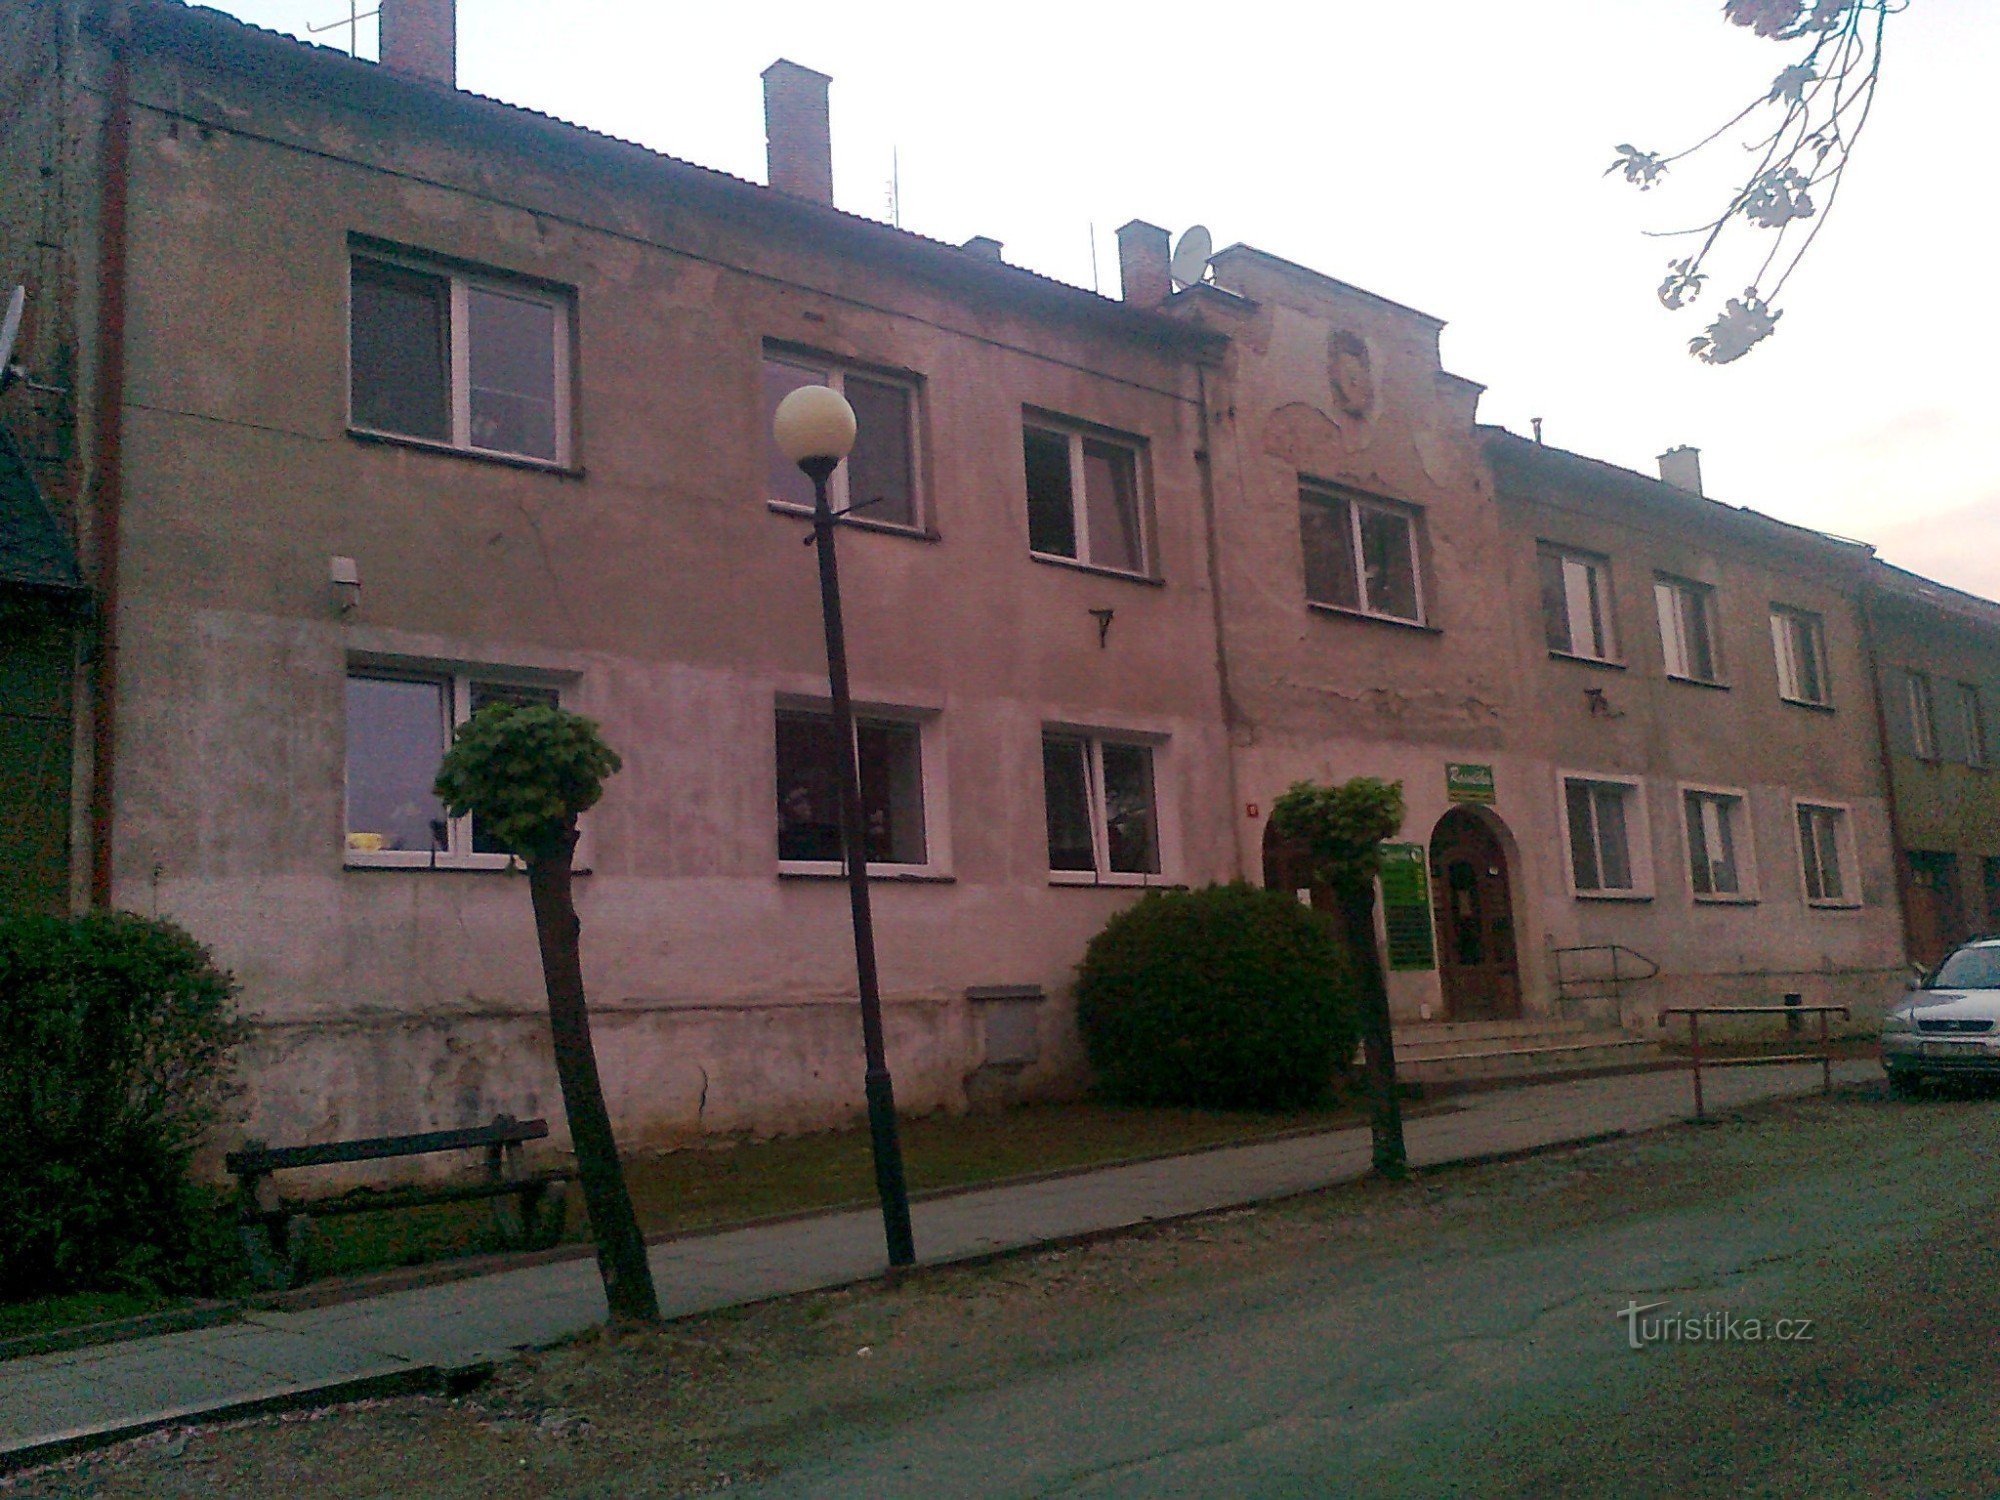 hiša na naslovu Náměstí Míru št. 51, imenovana MODRÁ HVĖZDA